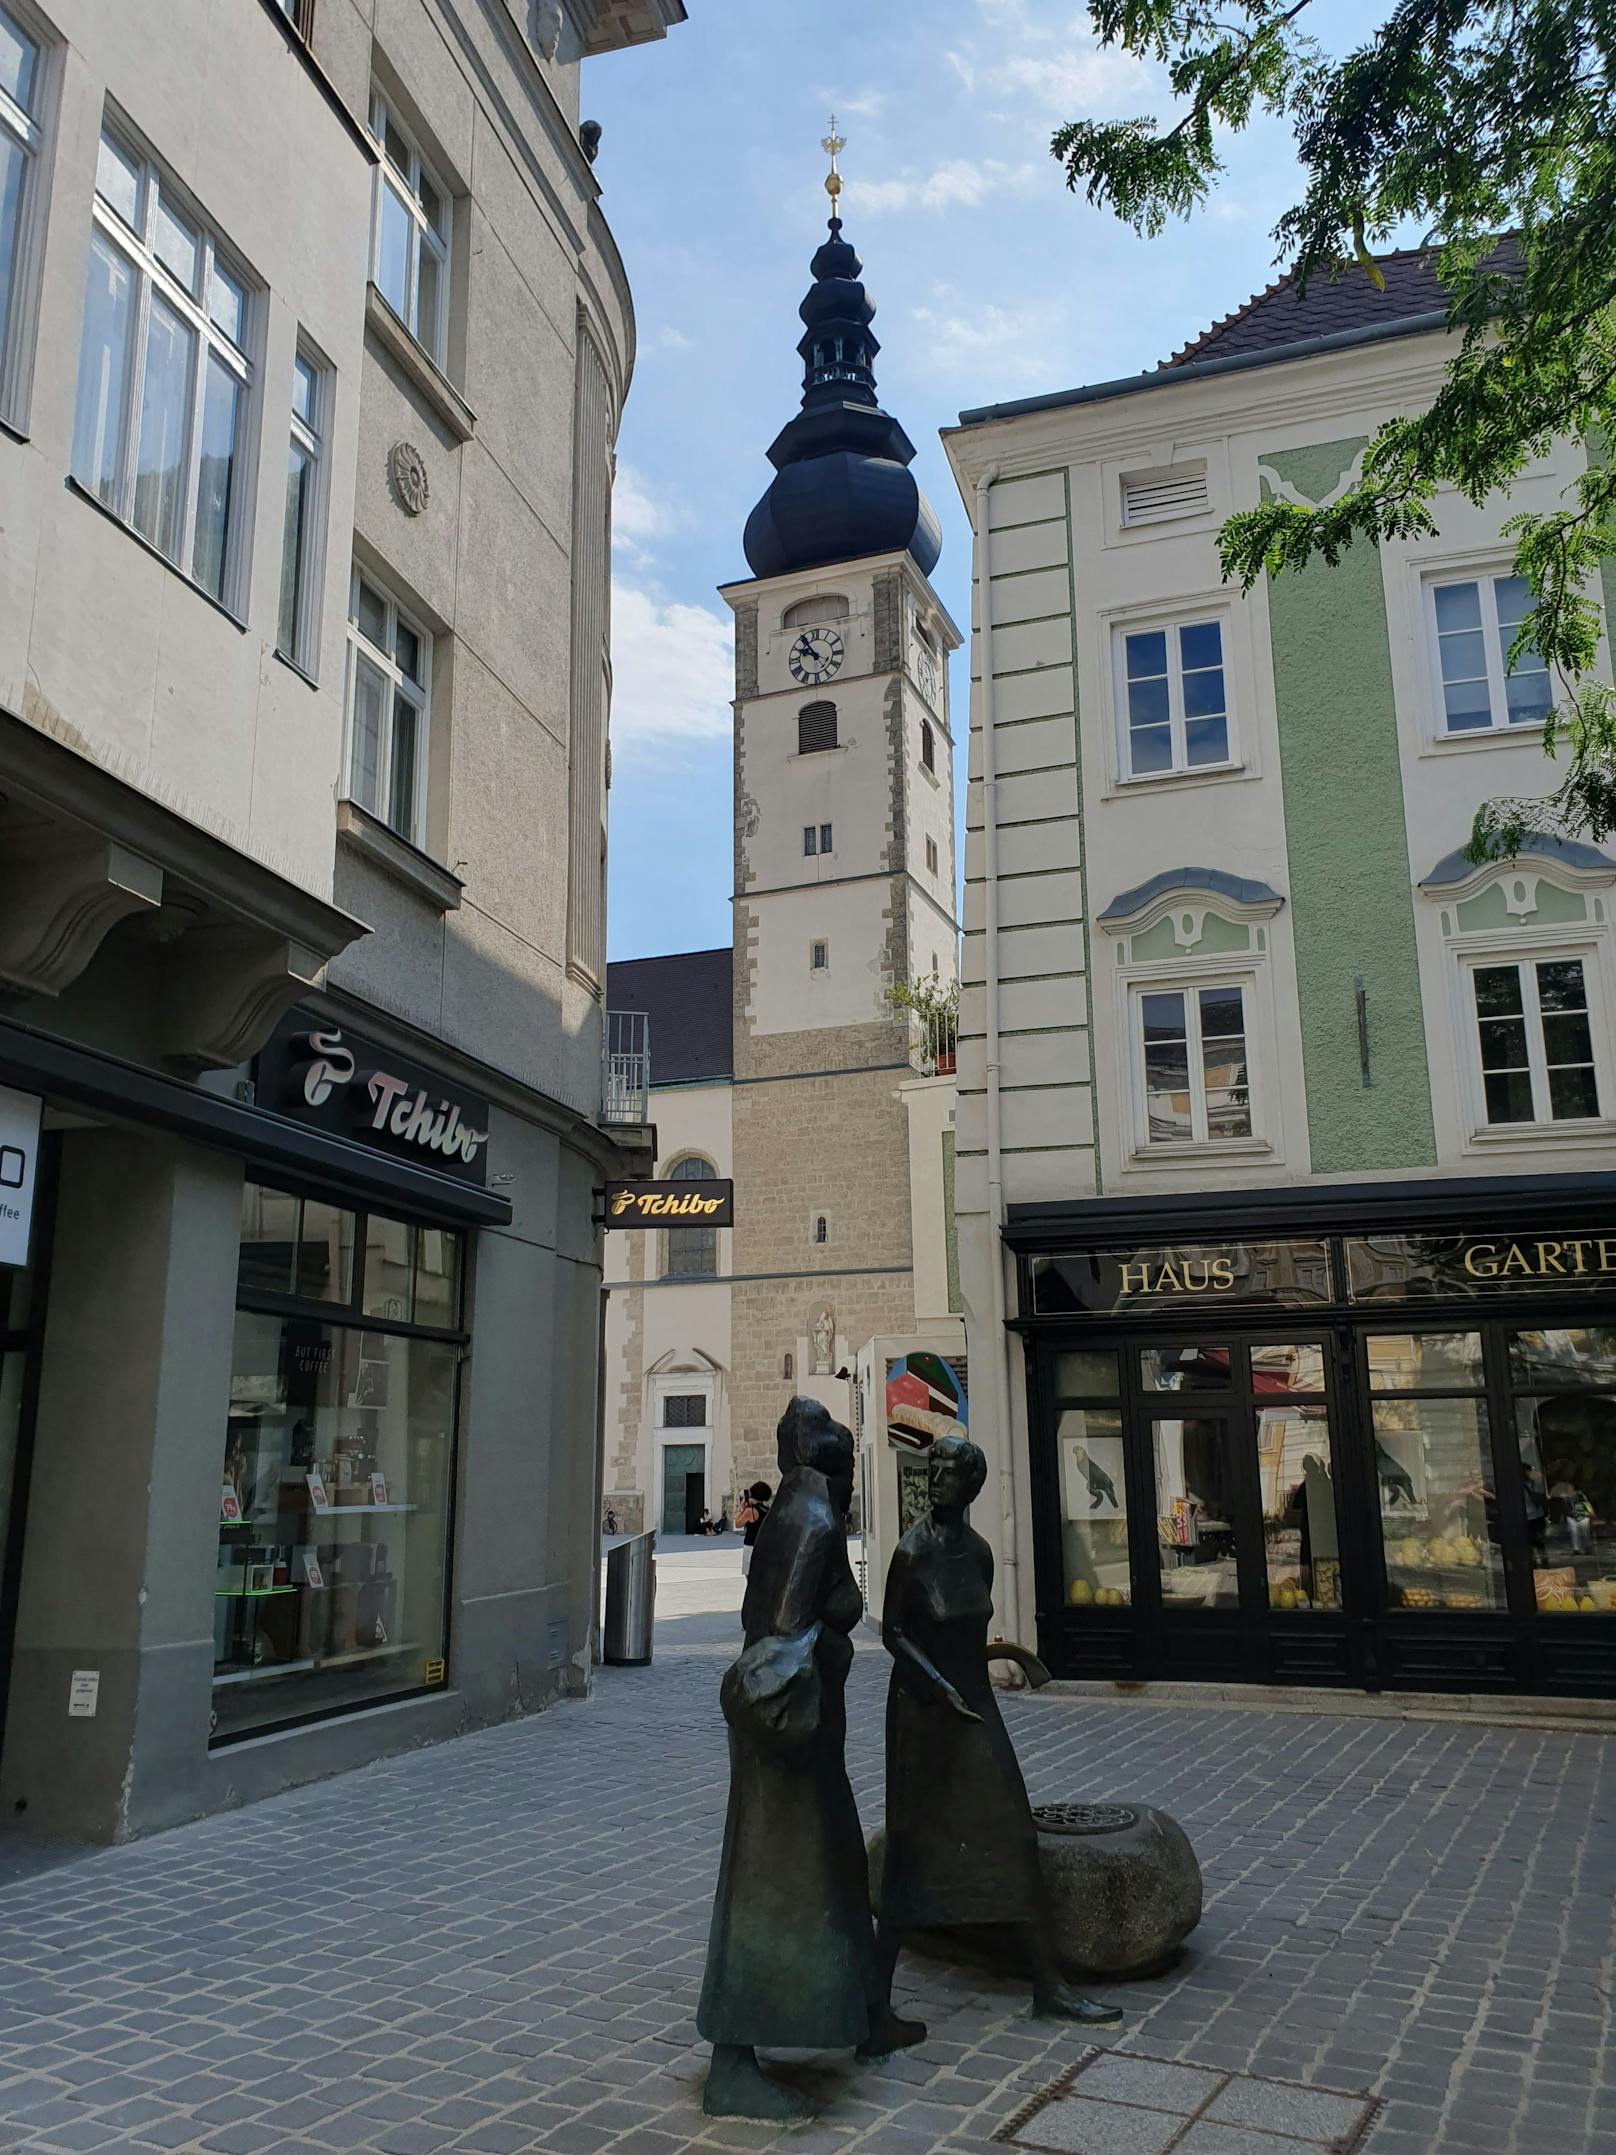 Dom in St. Pölten